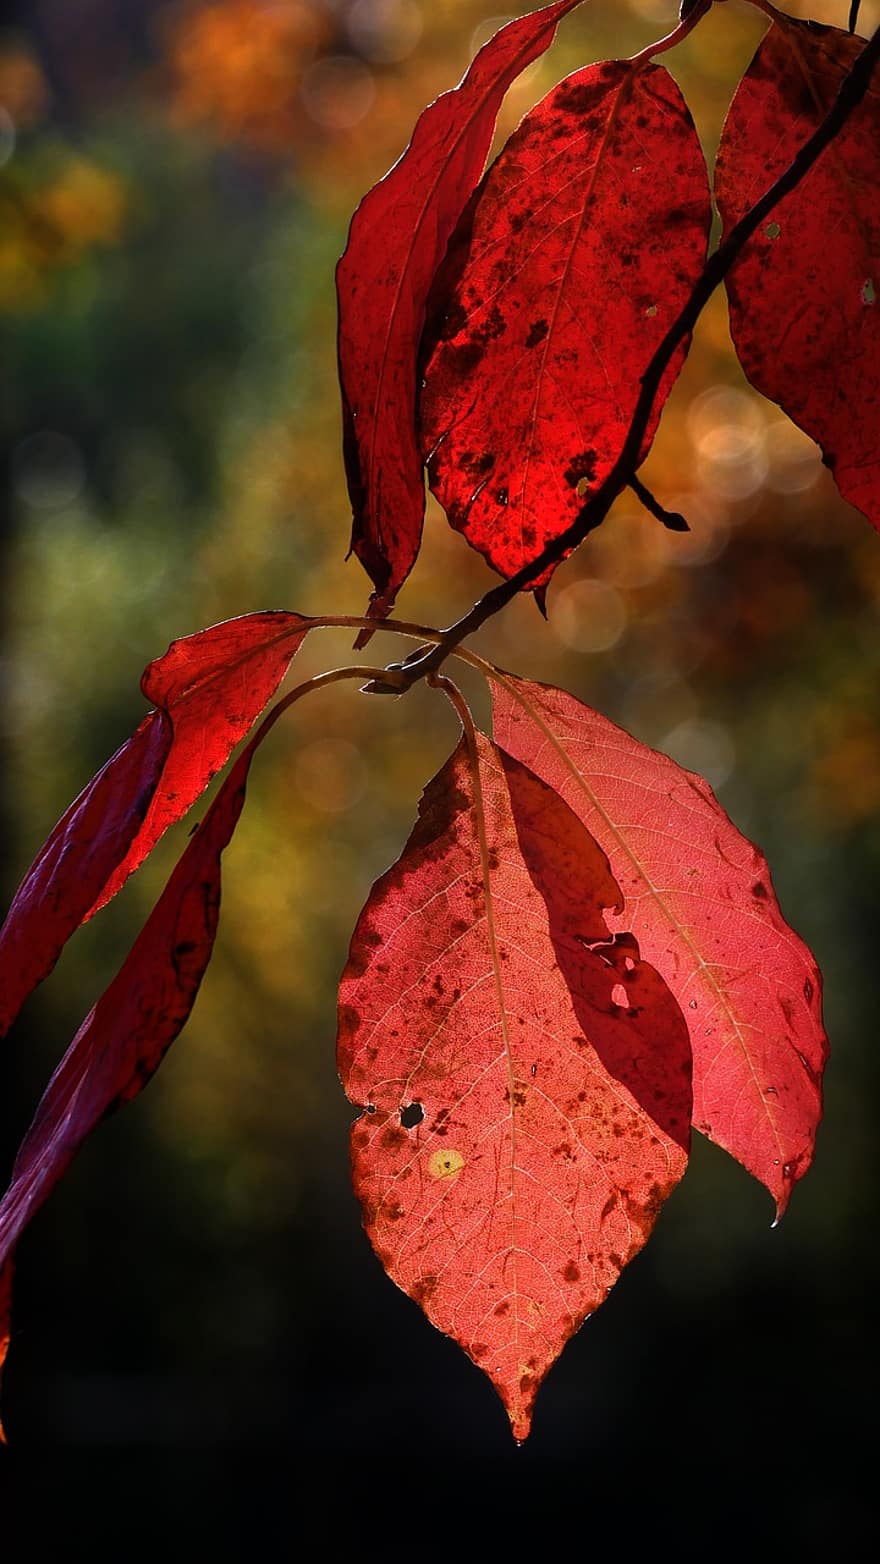 गिरना, लाल पत्तियां, पत्ते, पतझड़, प्रकृति, लीफ, मौसम, पीला, पेड़, क्लोज़ अप, चमकीला रंग